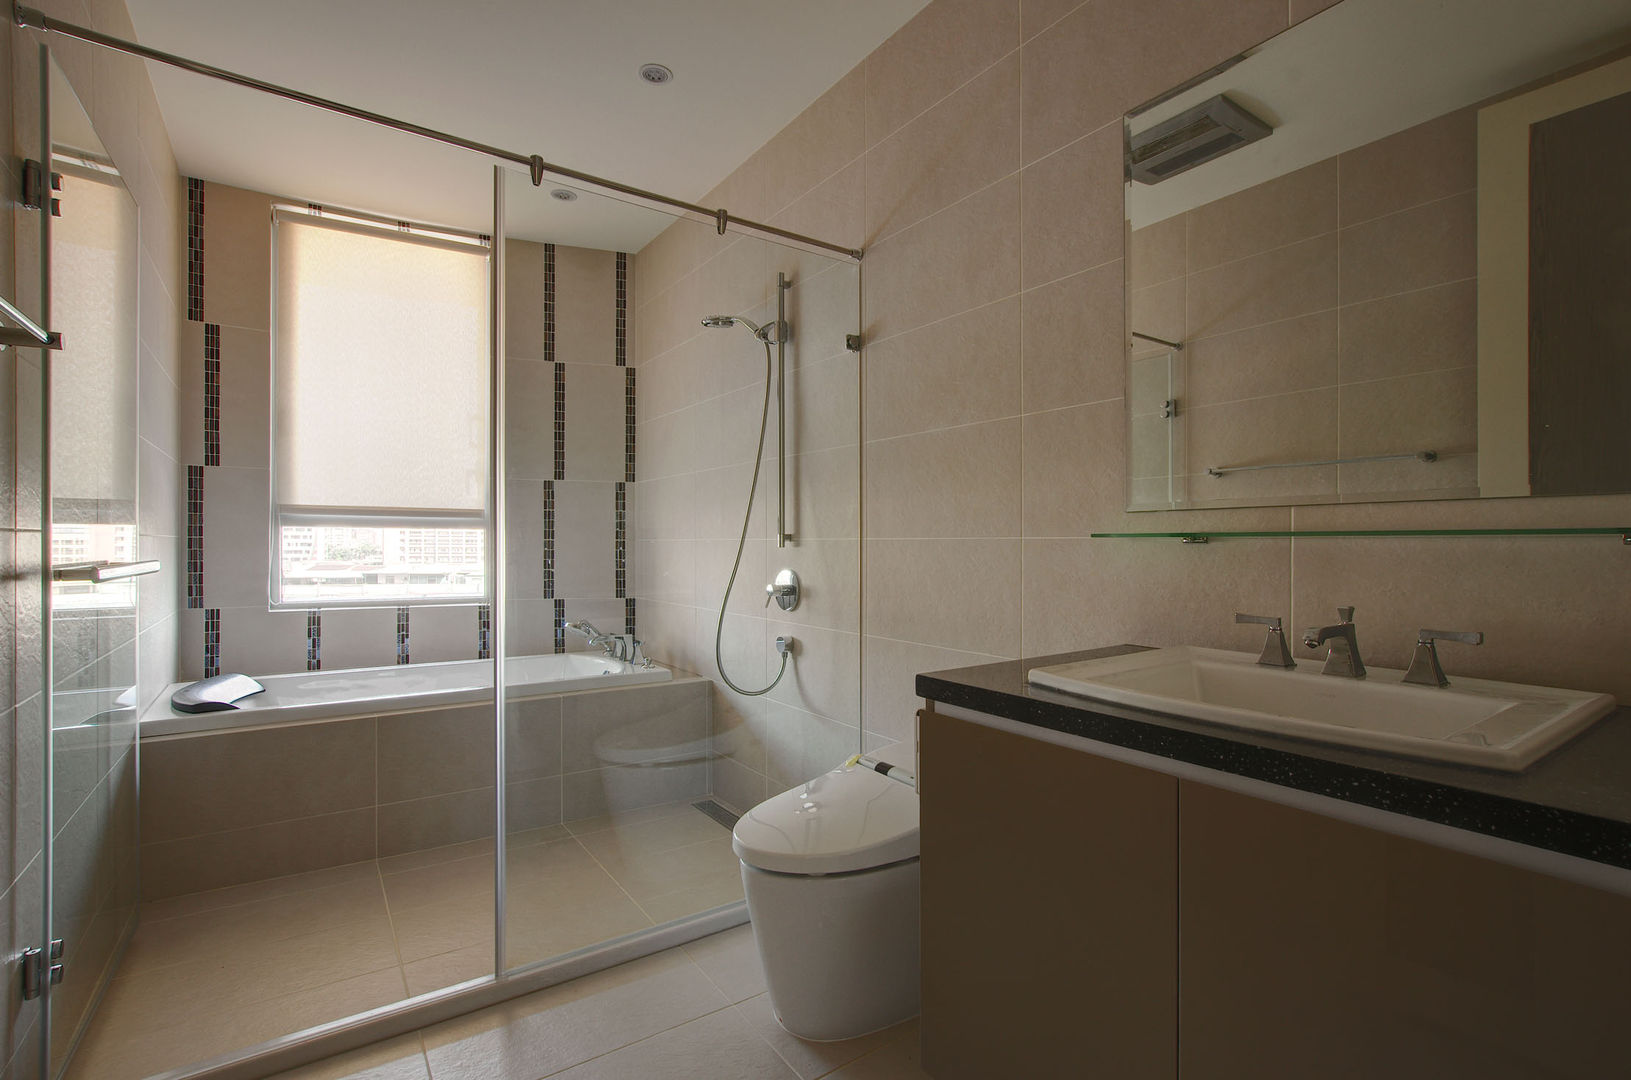 現代簡約家居, 哲嘉室內規劃設計有限公司 哲嘉室內規劃設計有限公司 Modern bathroom